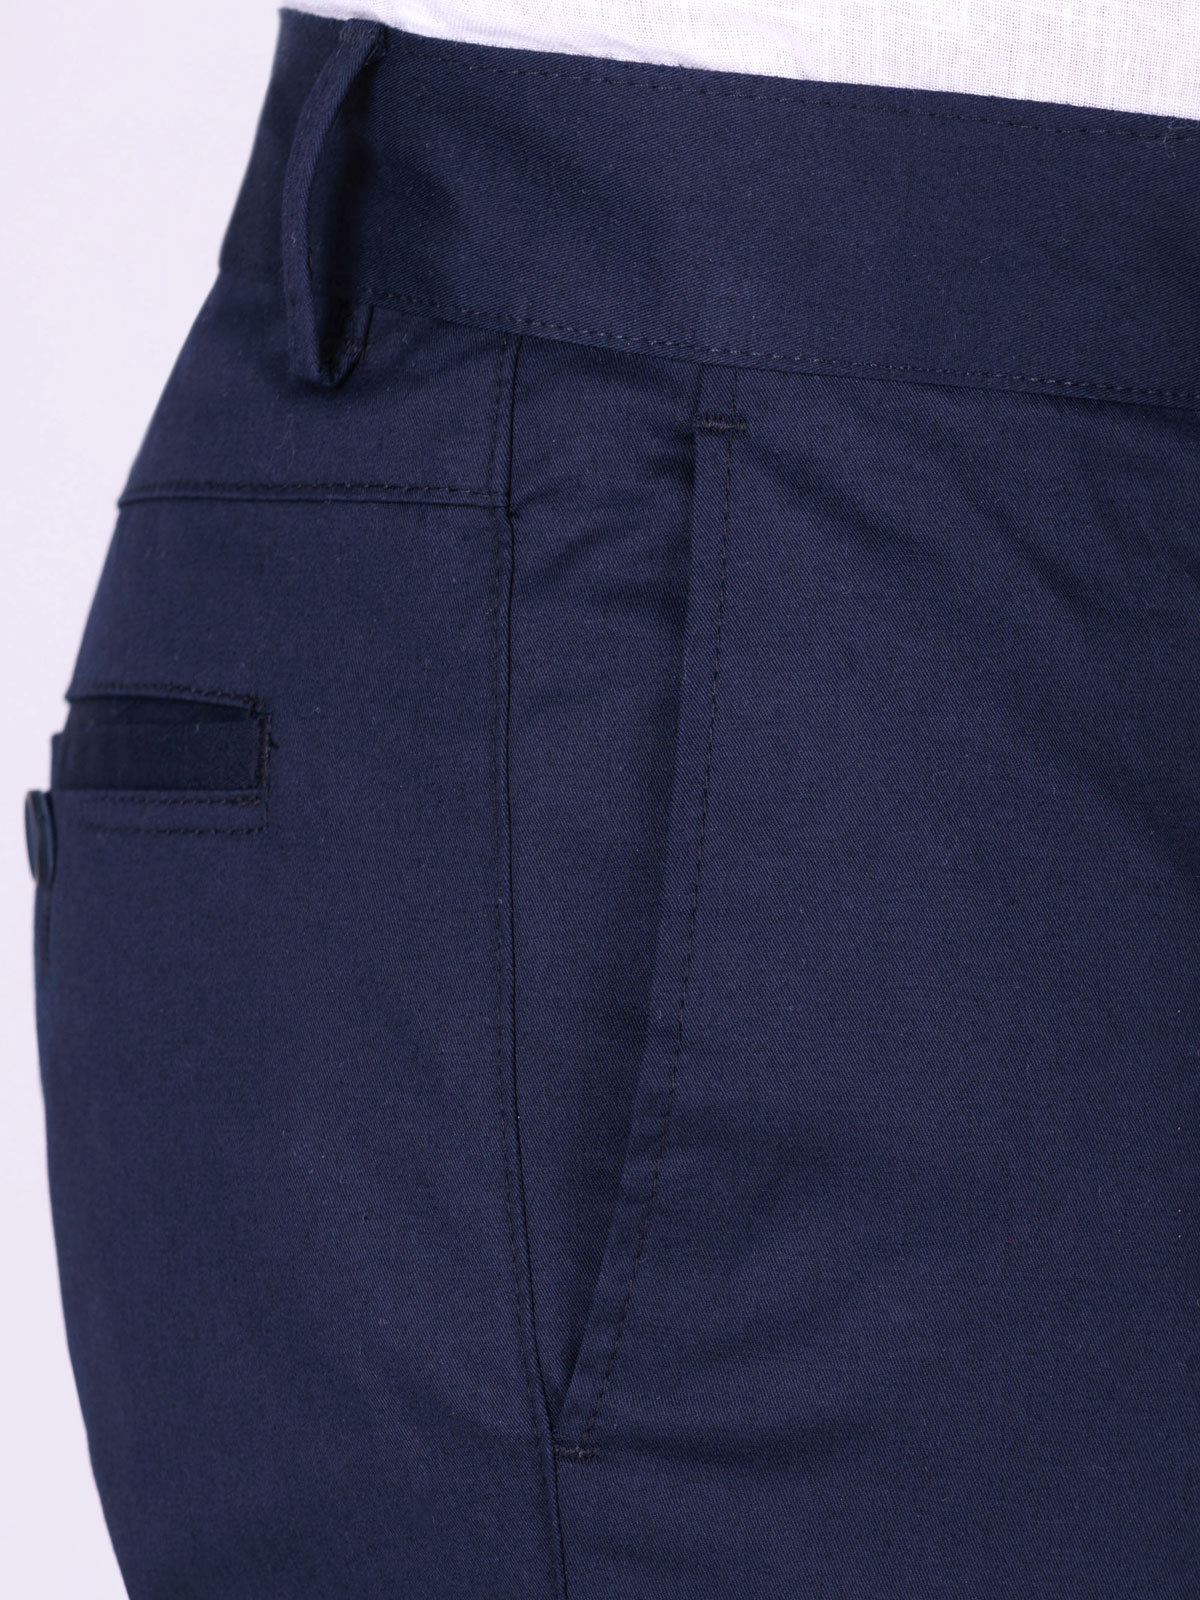 Σπορ κομψό παντελόνι σε μπλε χρώμα - 60287 € 53.43 img2